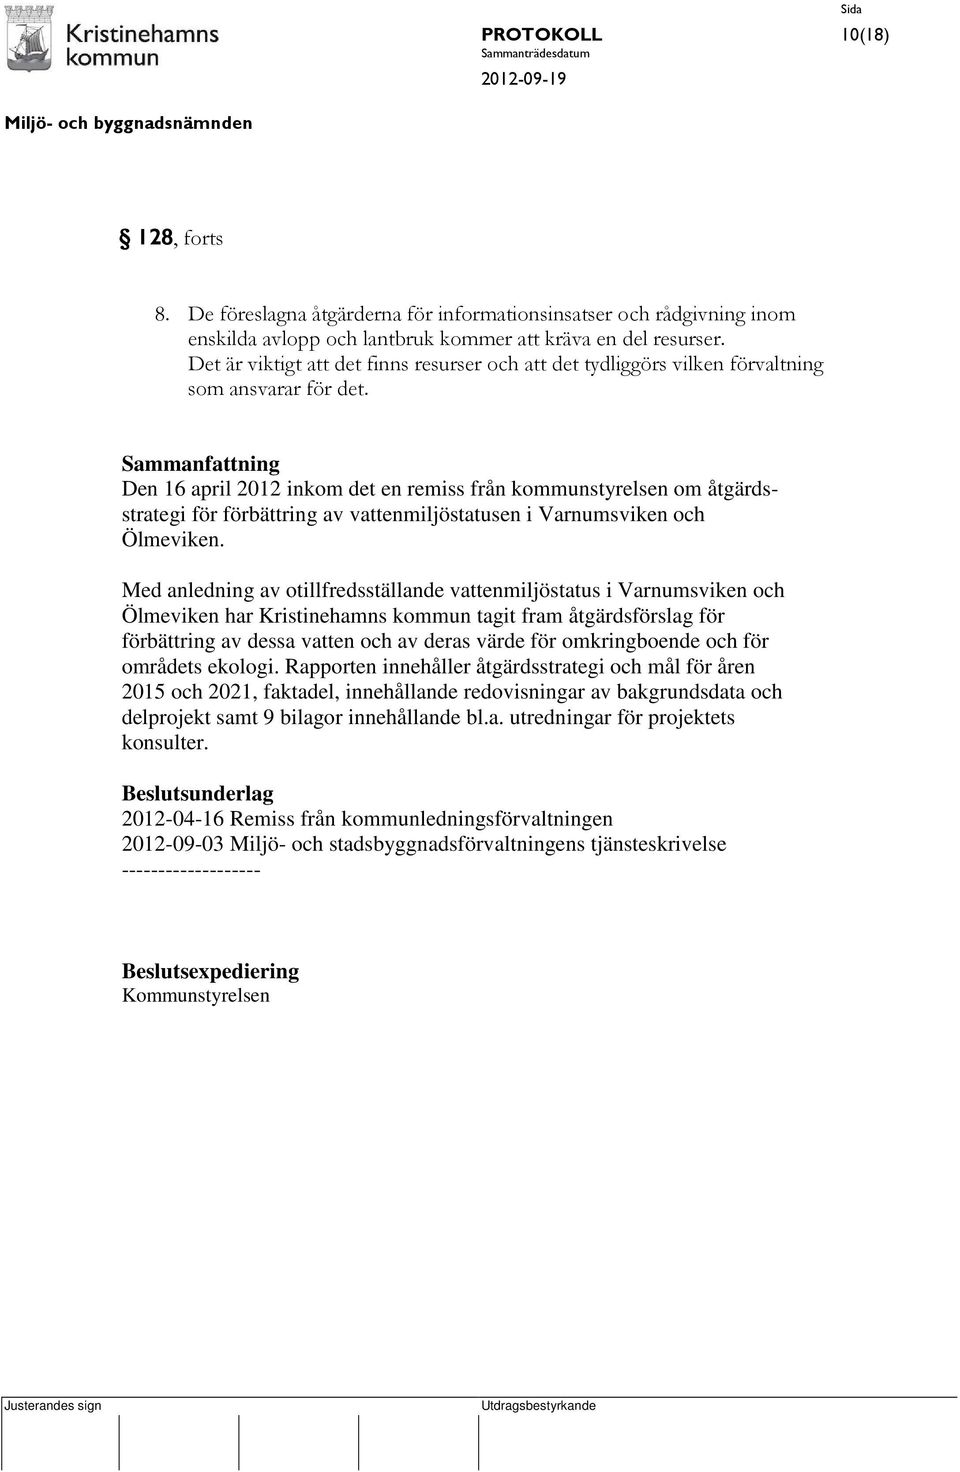 Den 16 april 2012 inkom det en remiss från kommunstyrelsen om åtgärdsstrategi för förbättring av vattenmiljöstatusen i Varnumsviken och Ölmeviken.